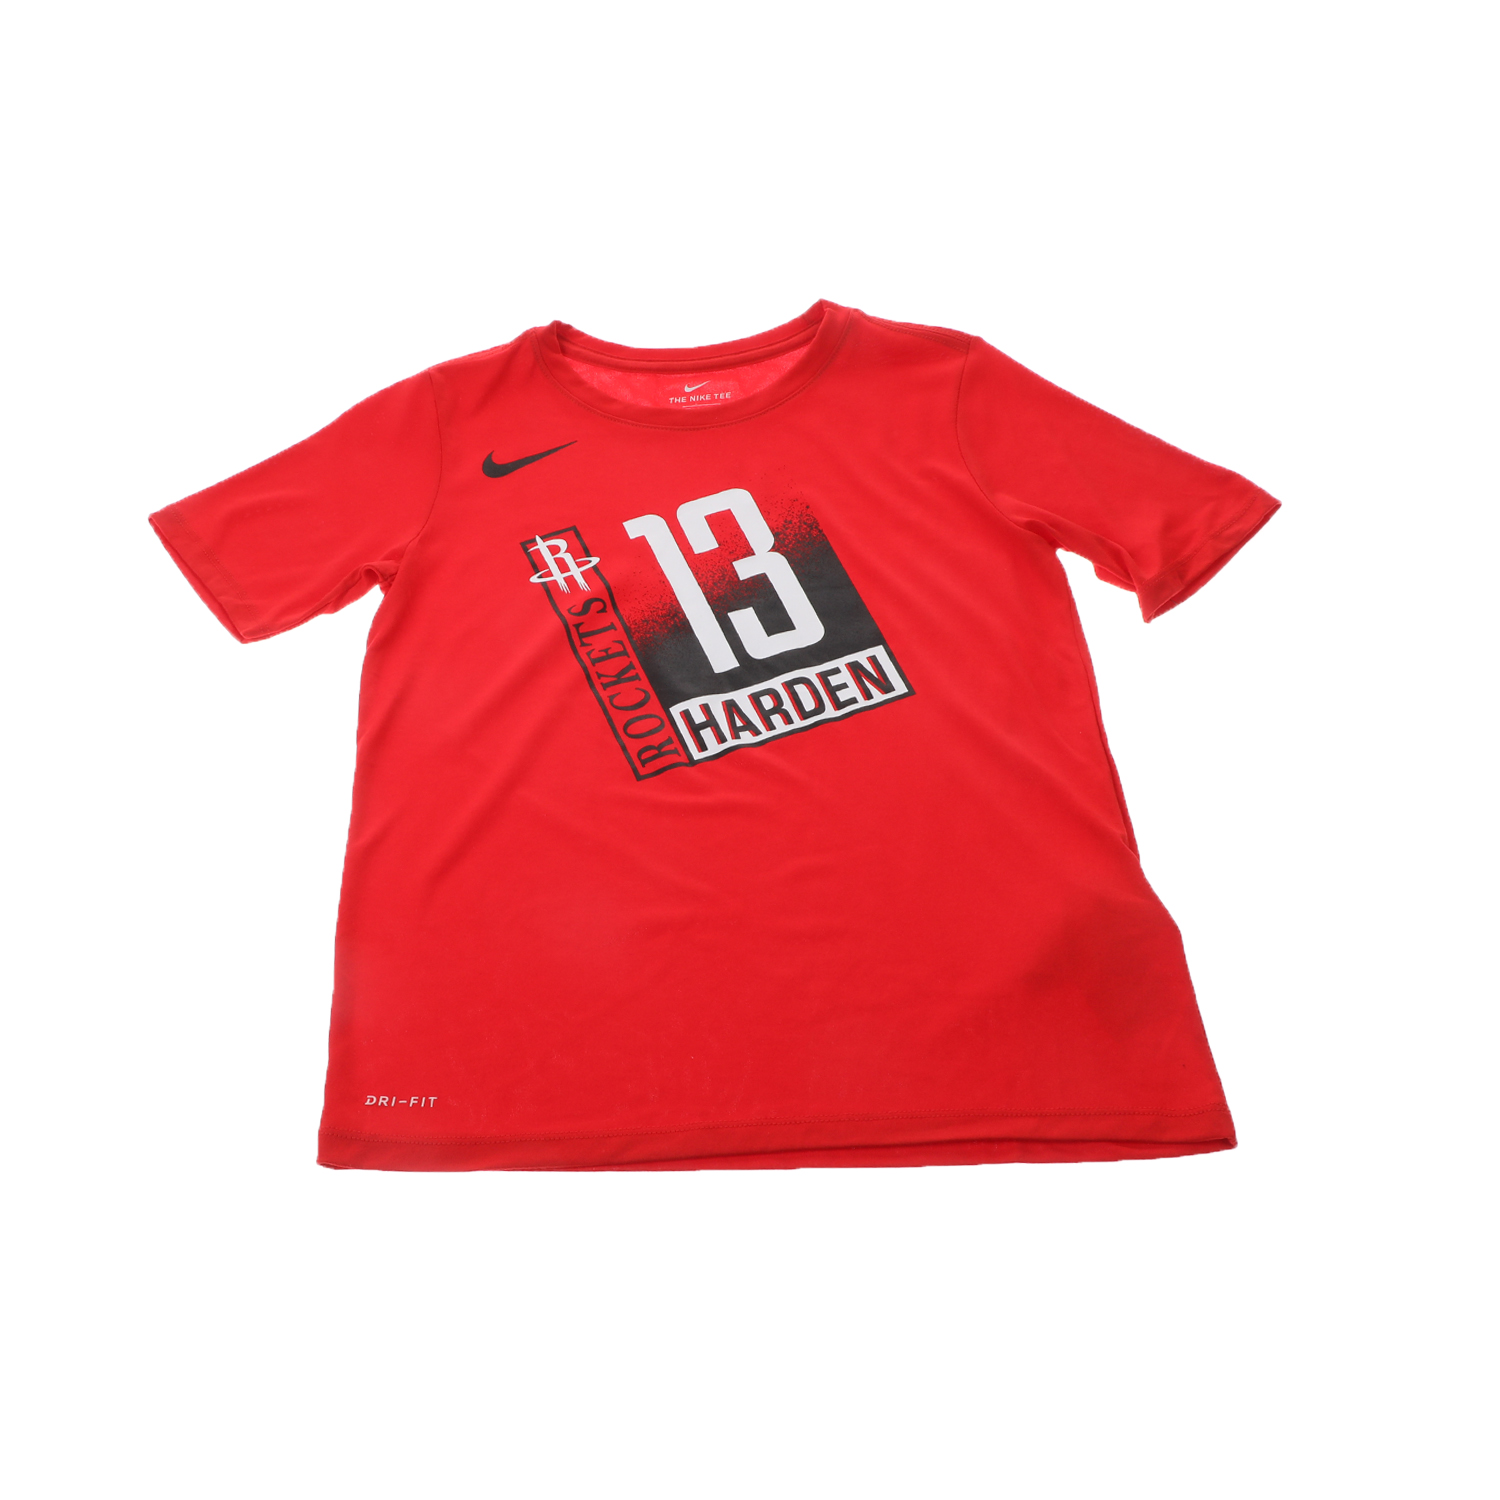 NIKE - Παιδικό t-shirt NIKE DRY TEE ES PLAYER ROCKETS κόκκινο Παιδικά/Boys/Ρούχα/Αθλητικά